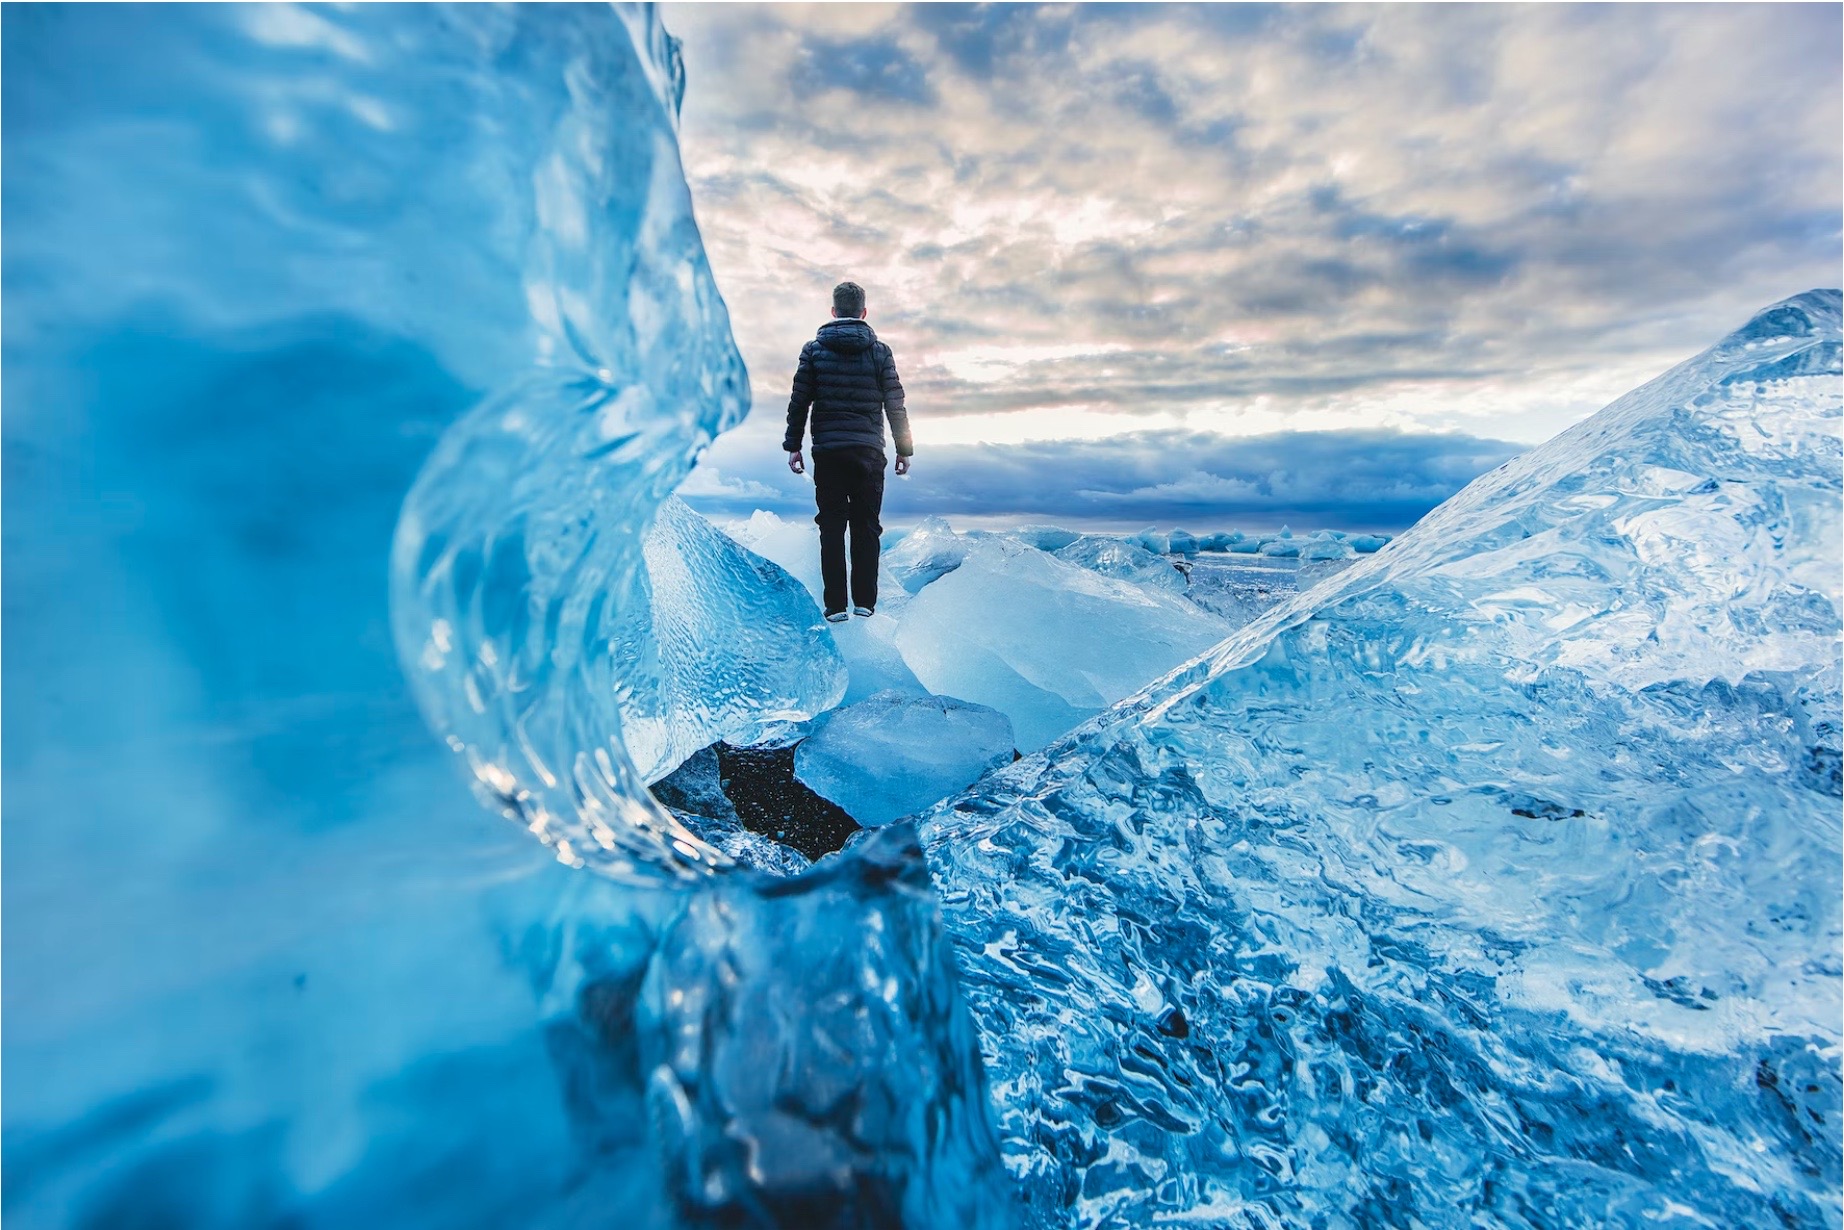 Understanding The Iceman: The Complete Wim Hof